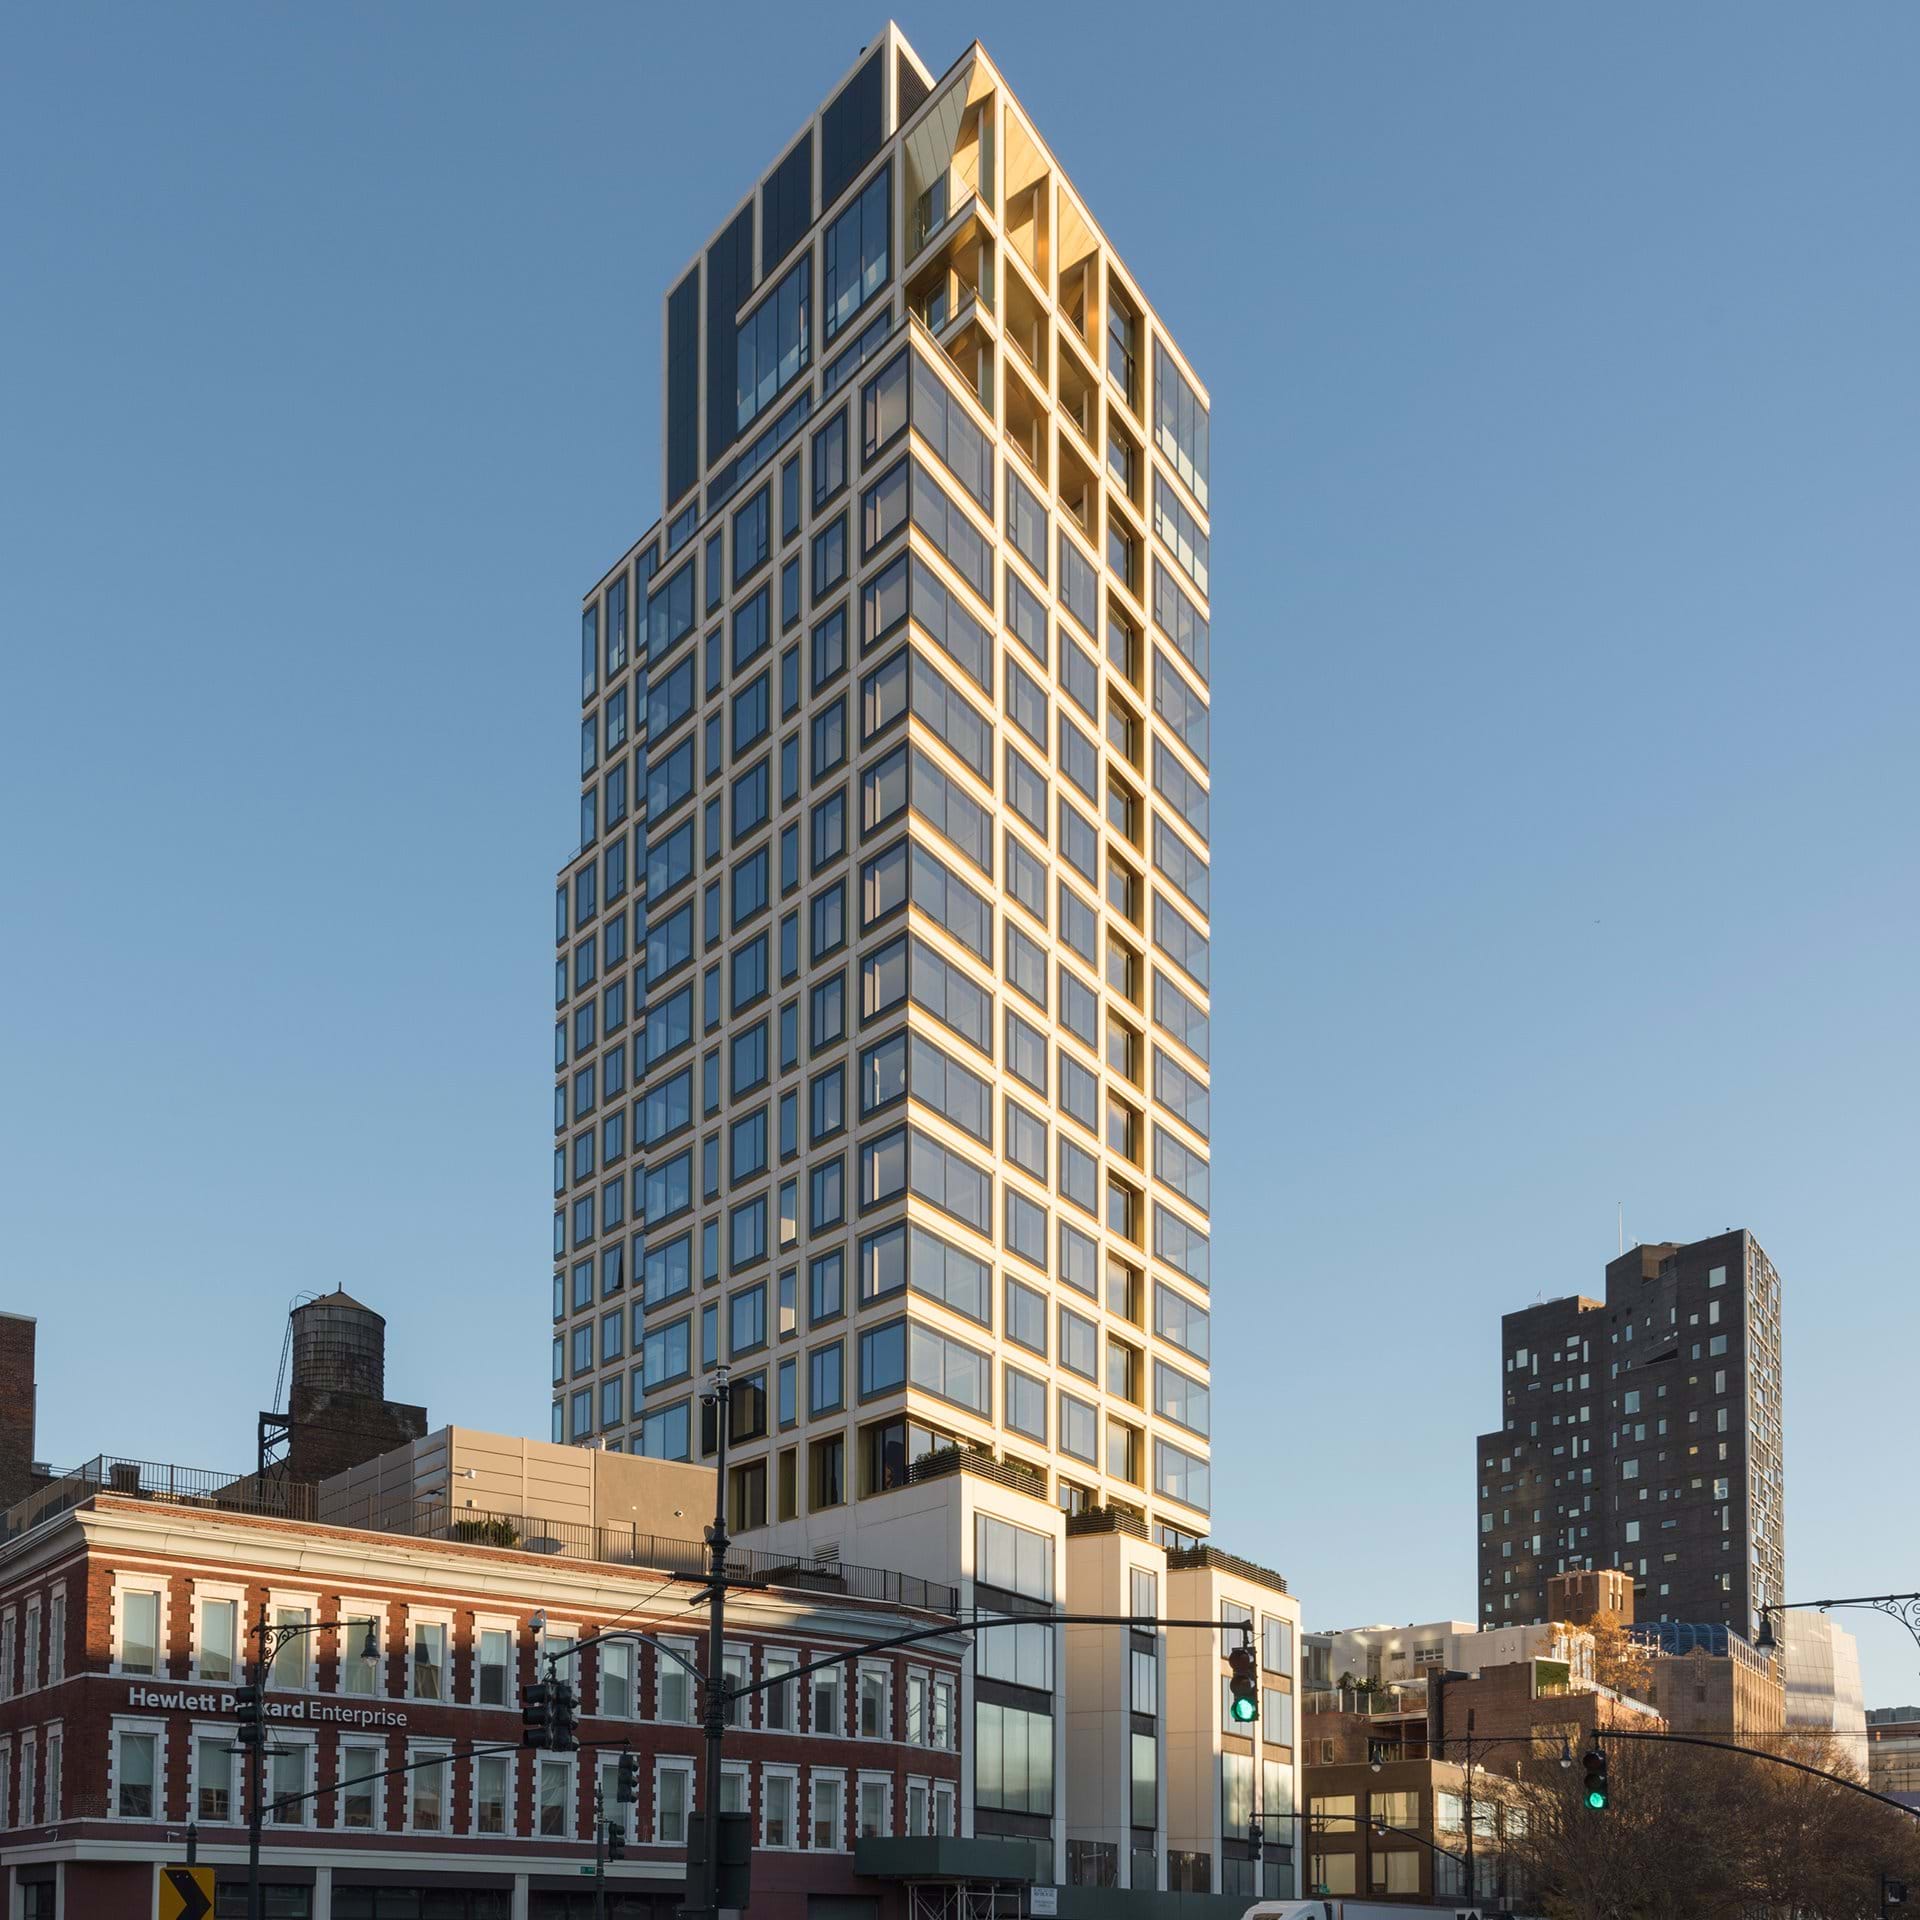 美国纽约551 west 21st street住宅 Foster   Partners 居住建筑案例 筑龙建筑设计论坛